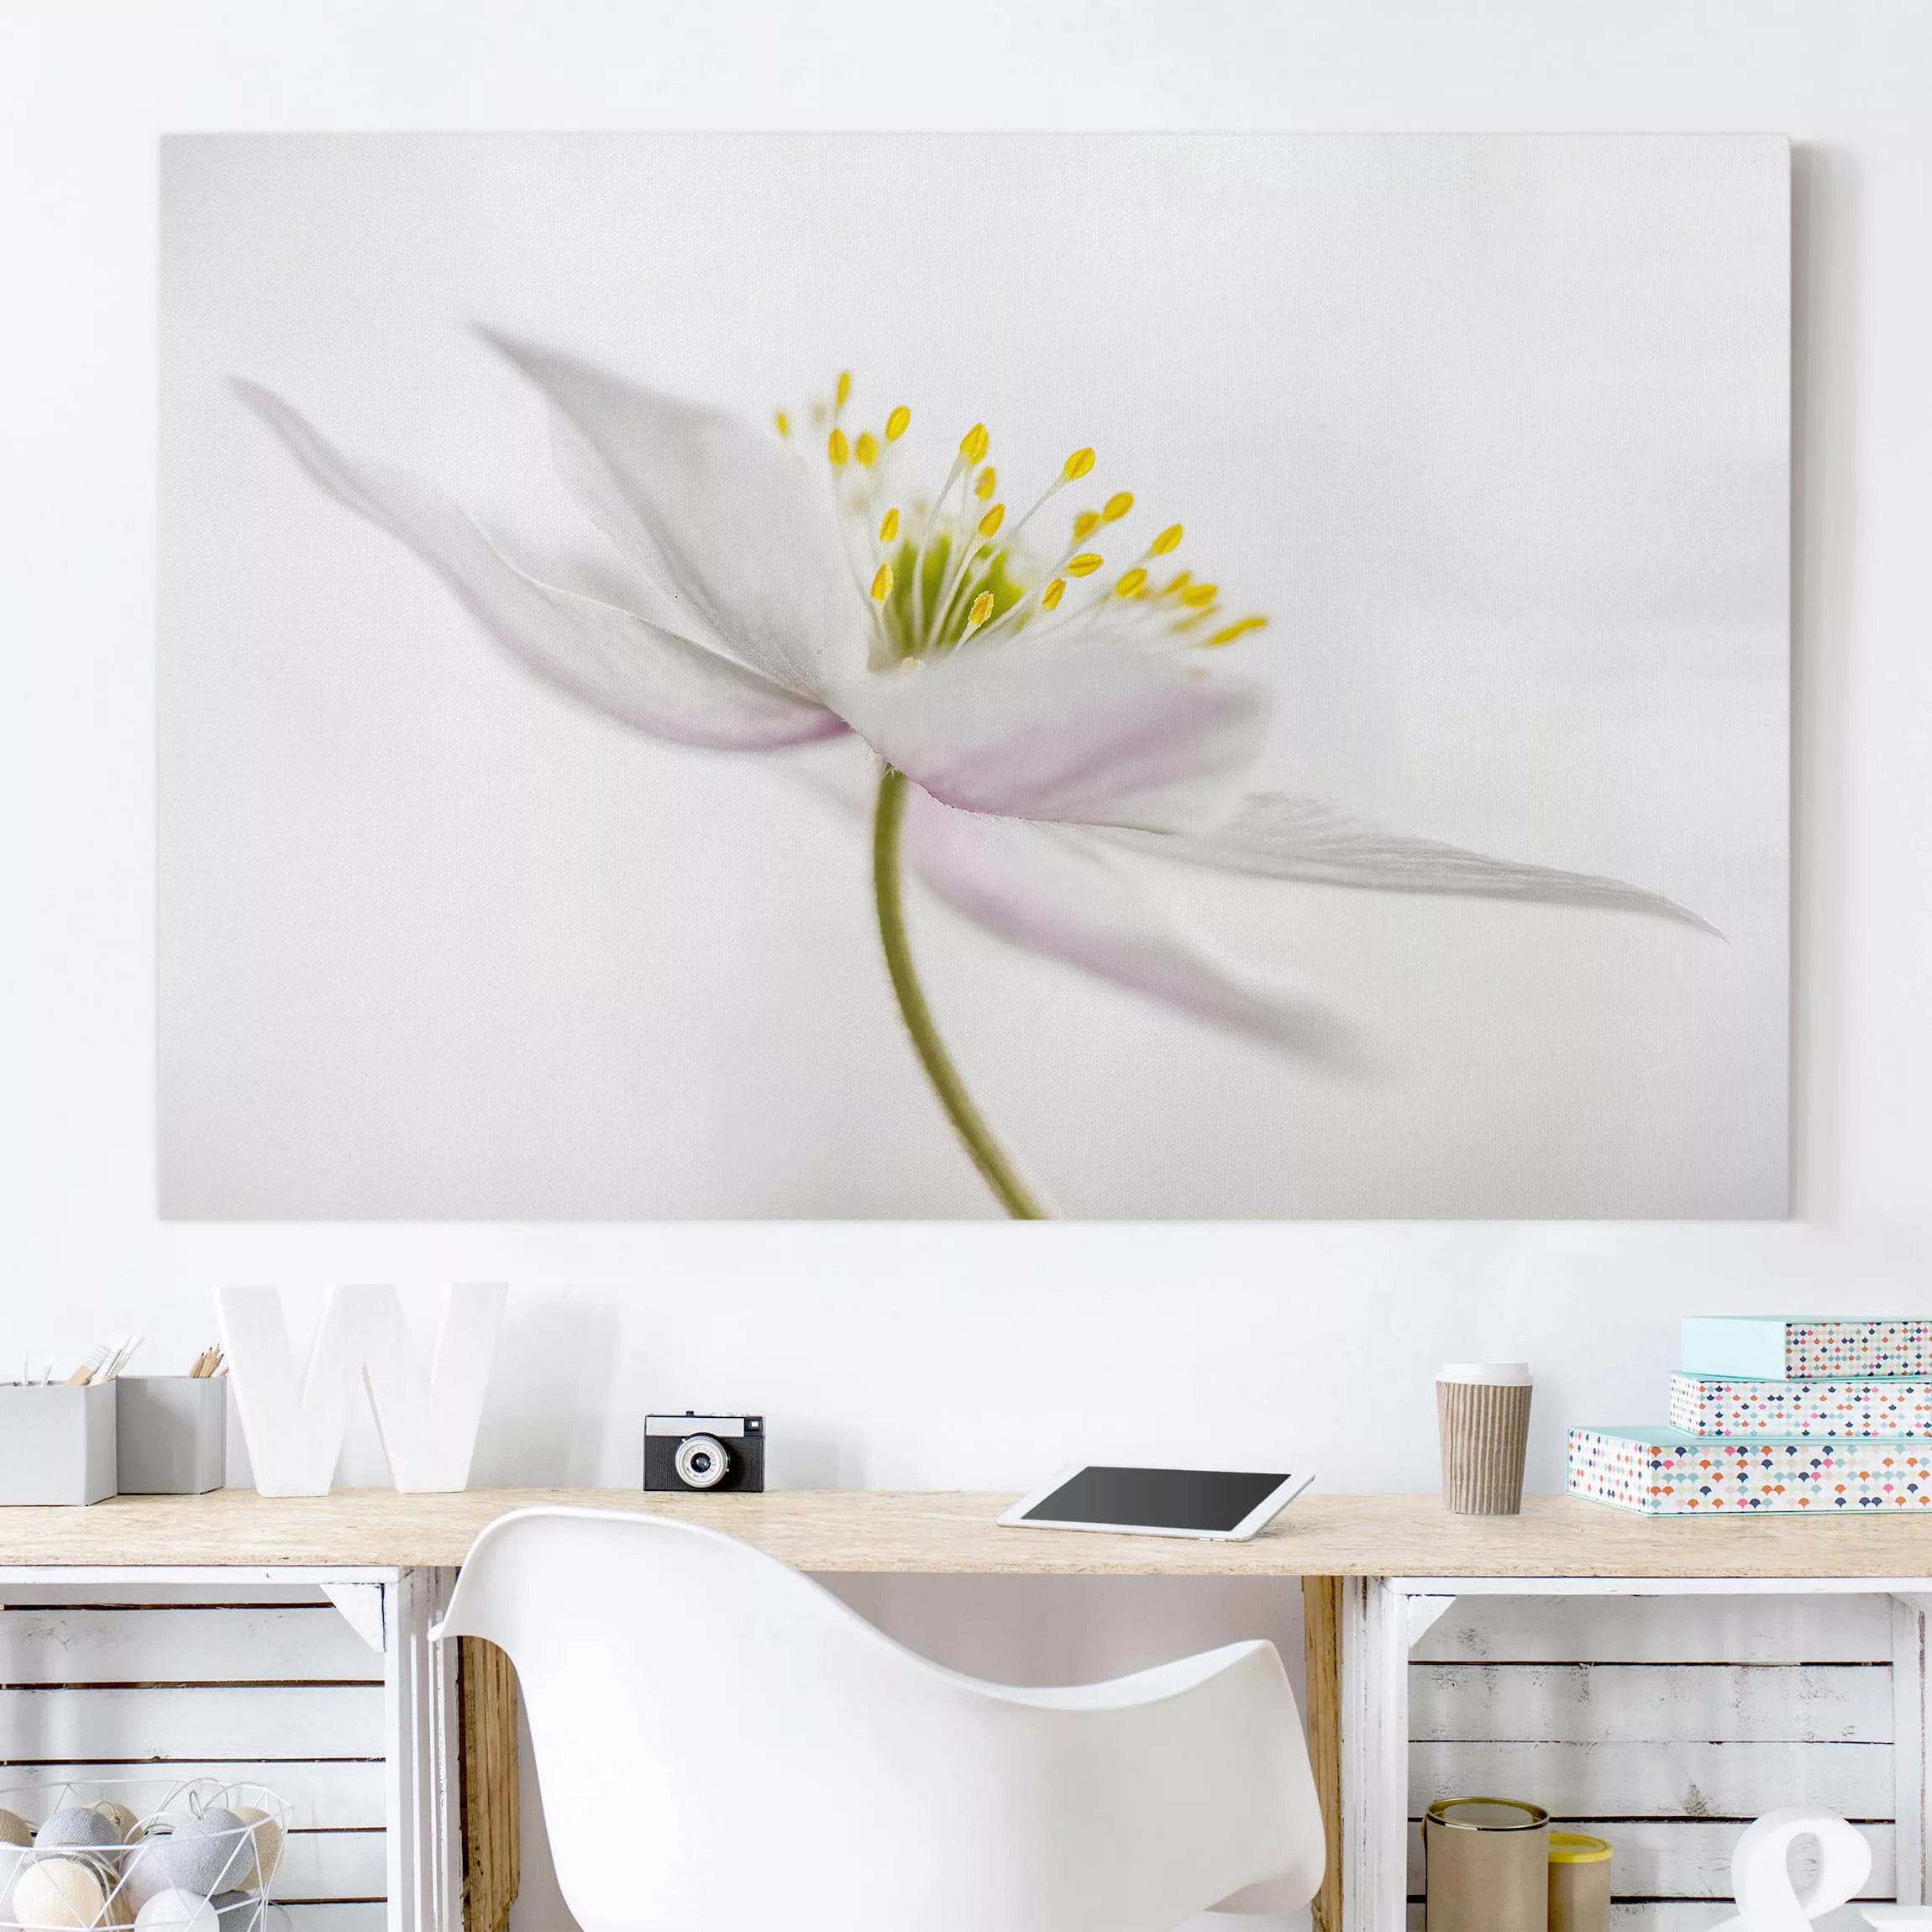 Leinwandbild Blumen - Querformat Nemorosa günstig online kaufen